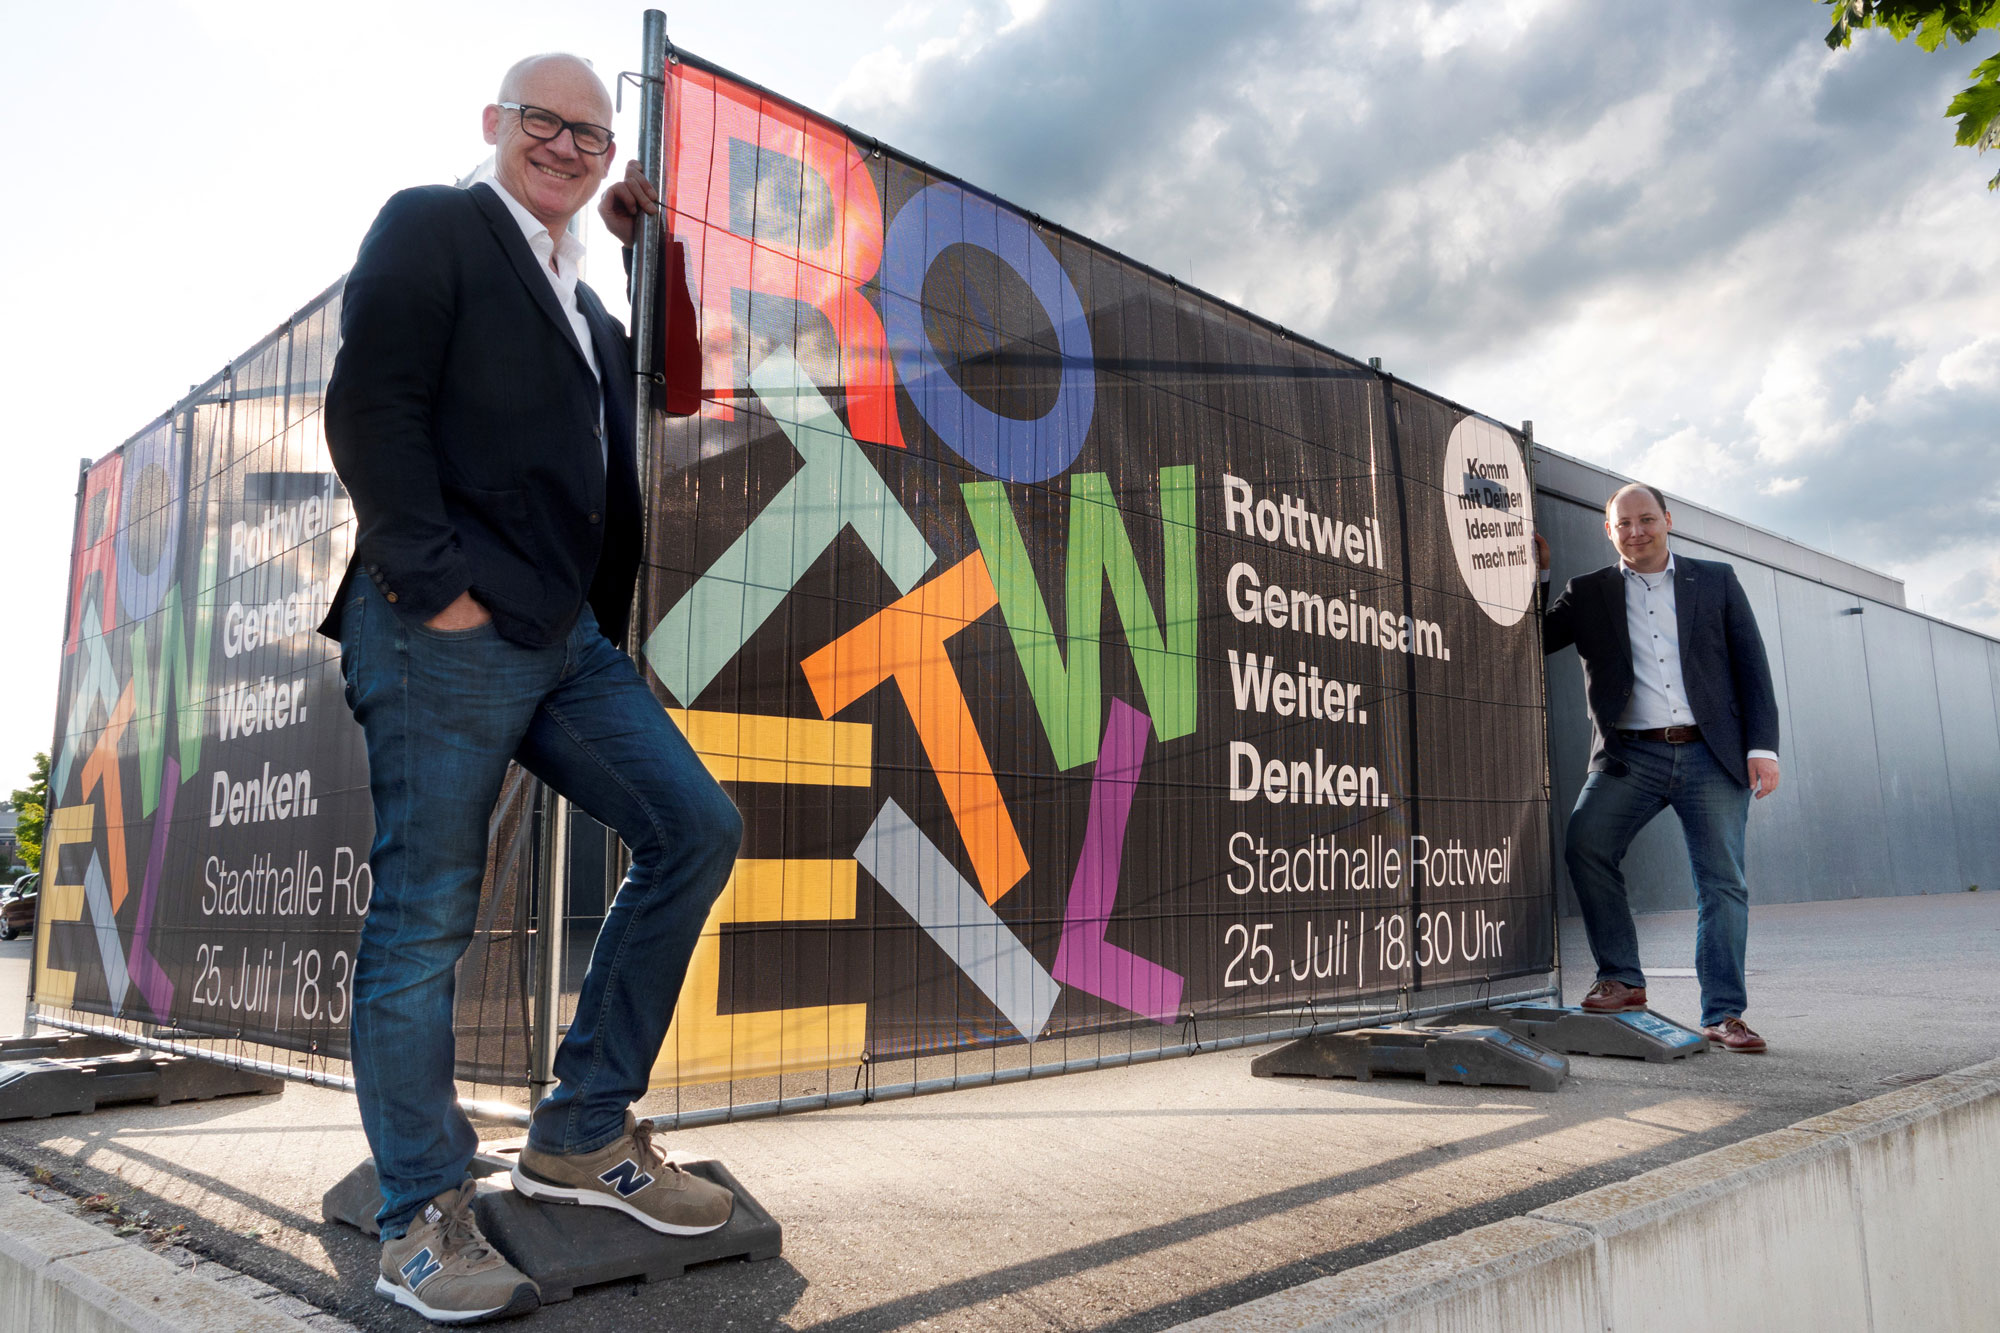 "Rottweil gemeinsam weiter denken“: Oberbürgermeister Ralf Broß (links) und Bürgermeister Dr. Christian Ruf (rechts) laden die Bürgerinnen und Bürger zu einem kreativen Workshop in die Stadthalle ein (Foto: Stadt Rottweil).